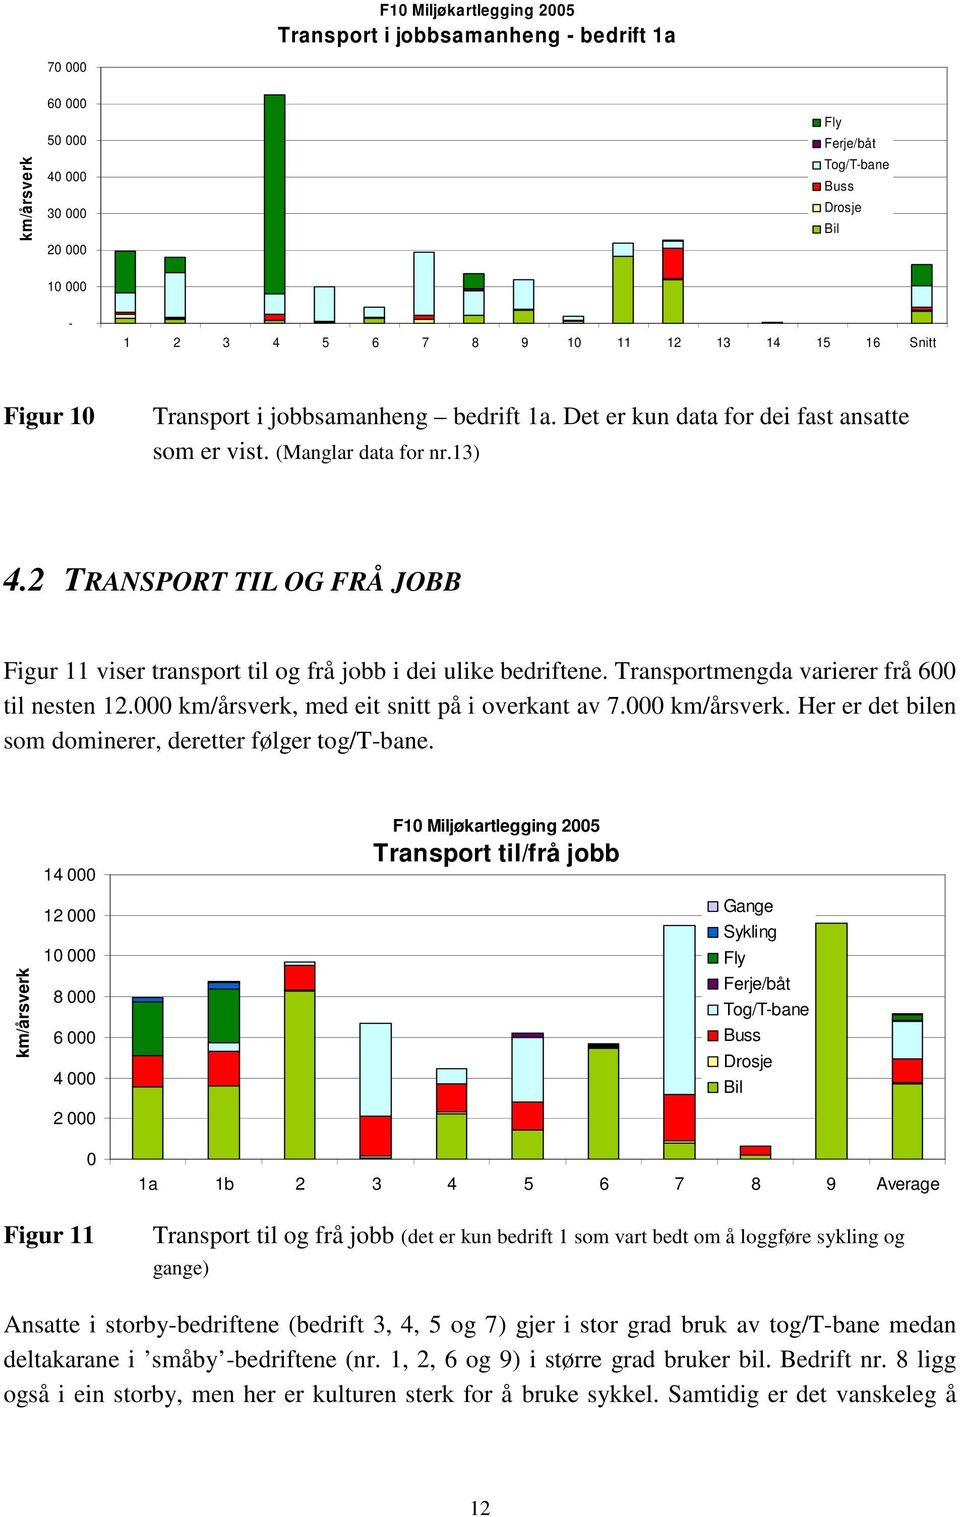 2 TRANSPORT TIL OG FRÅ JOBB Figur 11 viser transport til og frå jobb i dei ulike bedriftene. Transportmengda varierer frå 600 til nesten 12.000 km/årsverk, med eit snitt på i overkant av 7.